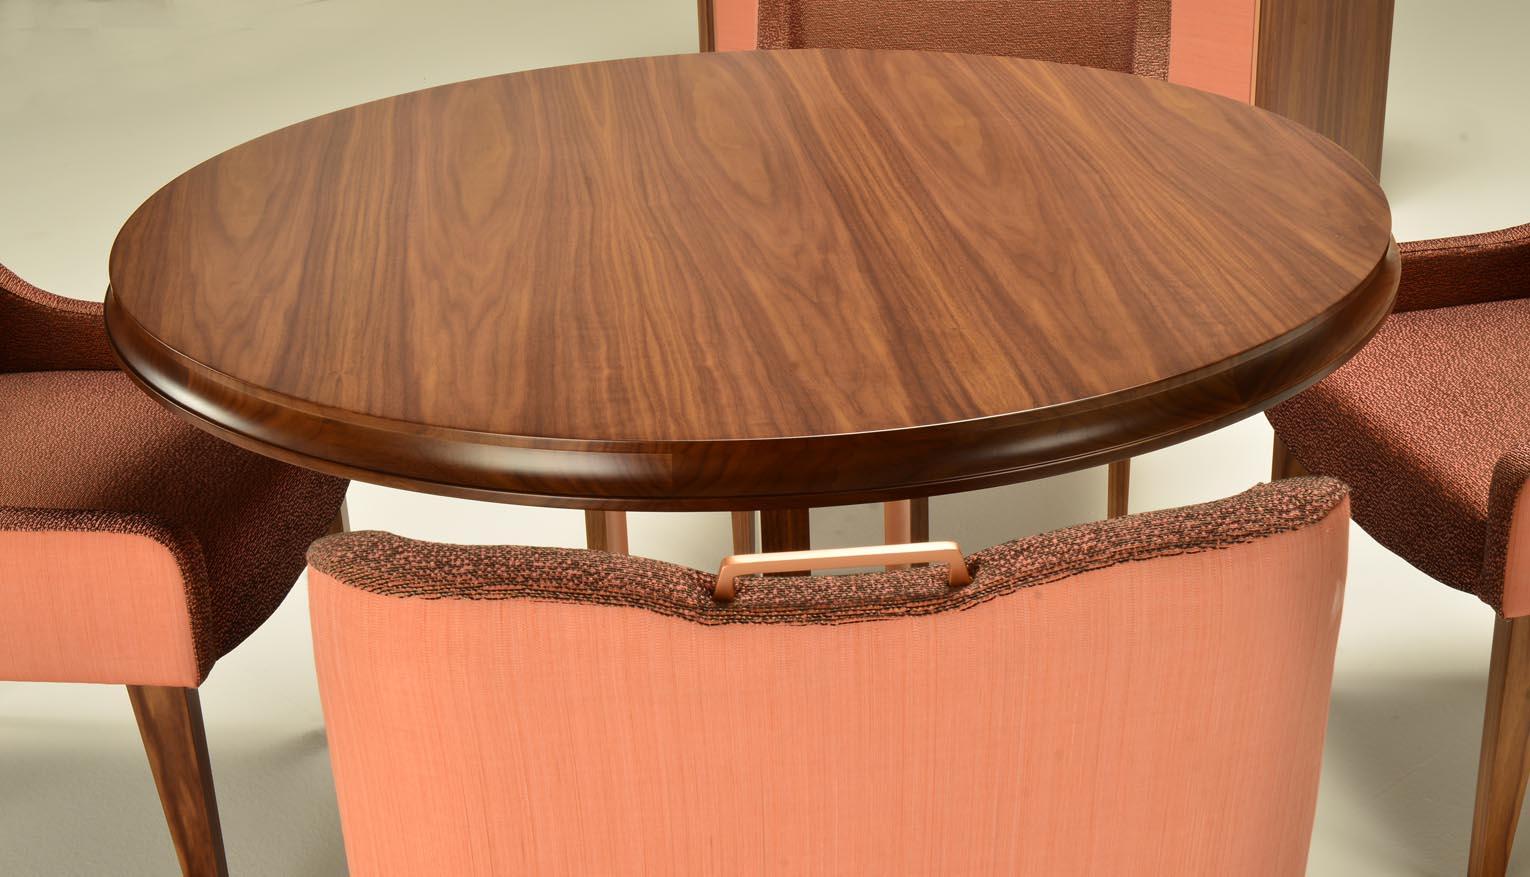 Nosh - Table de salle à manger en Noyer Américain noir mat, finition métallique or rose sur la partie interne des pieds.
cm. 120Ø*76h.
 